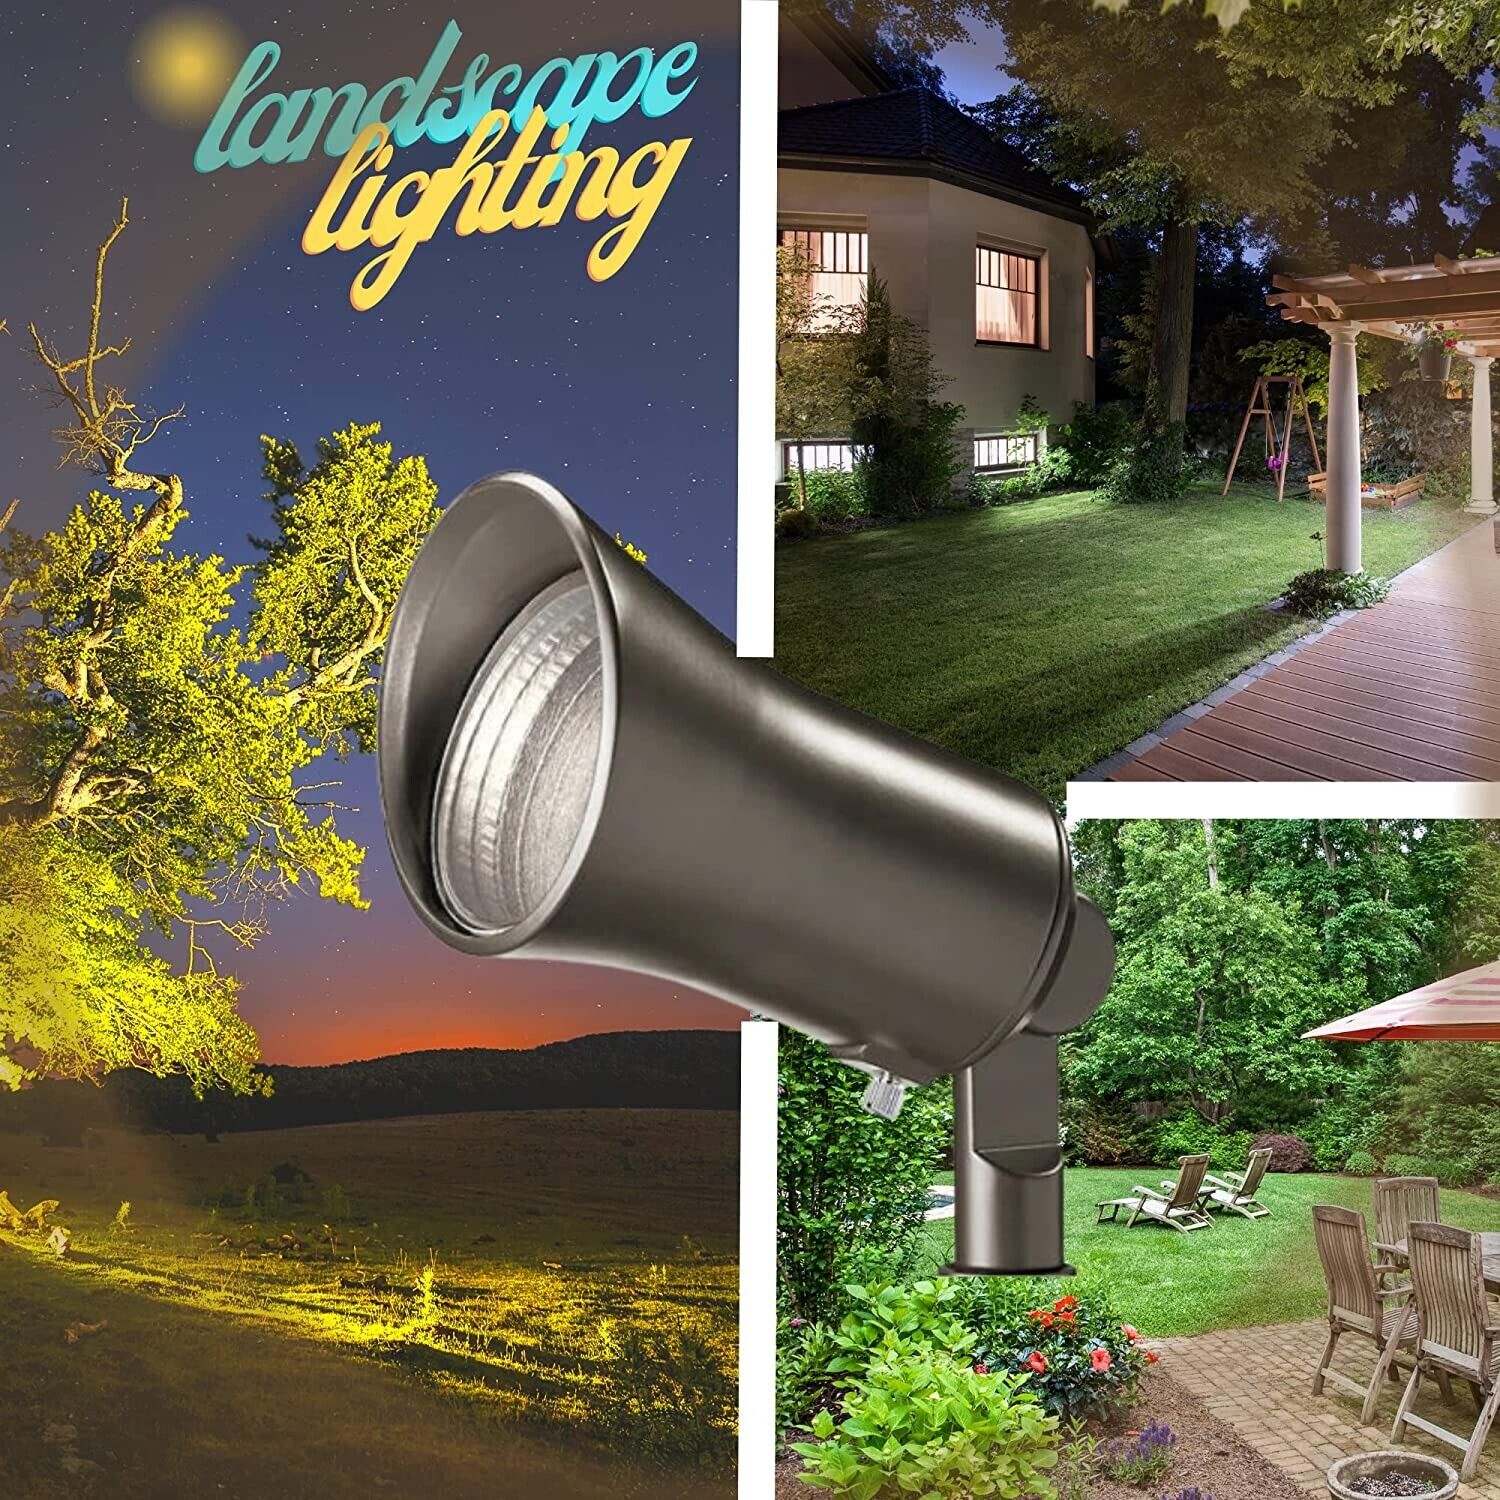 Kichler Landscape 28310 - Showscape 5 Watt Olde Bronze Low Voltage LED –  TrueLite Distribution